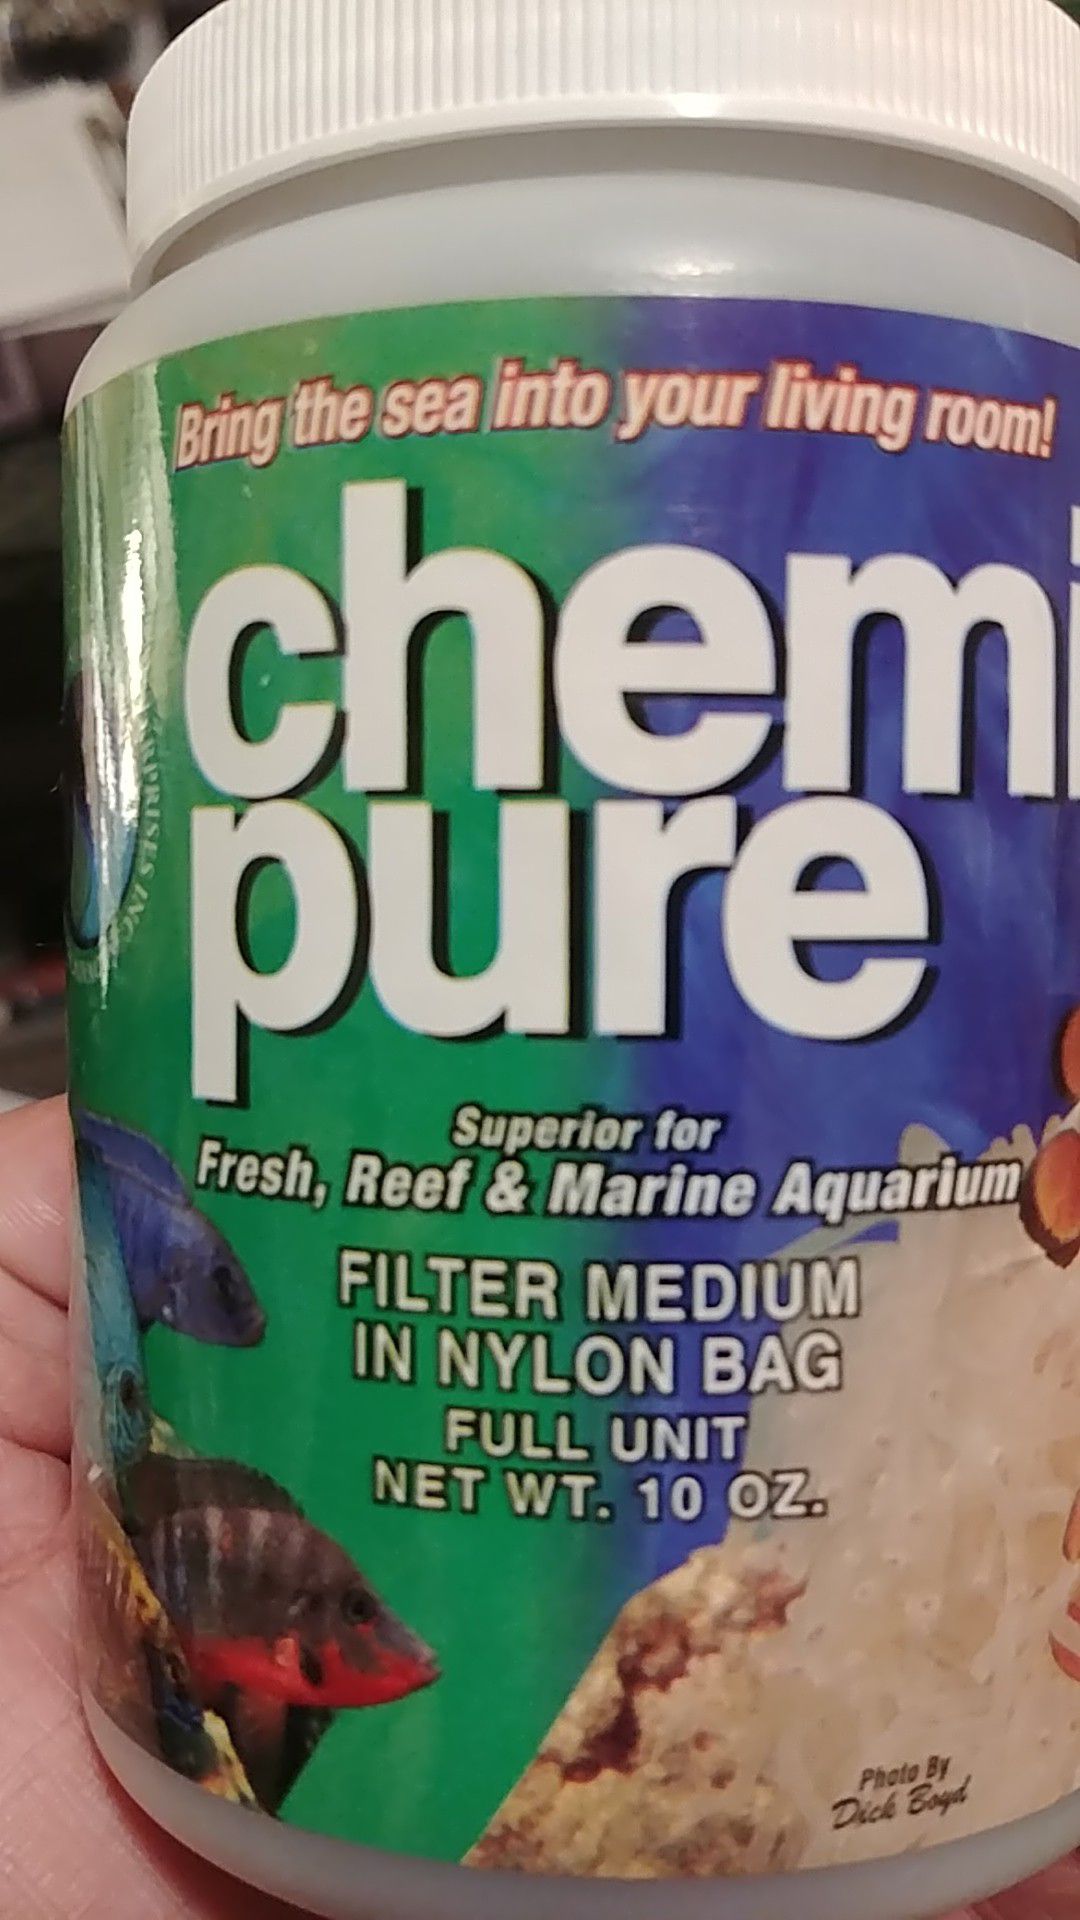 Chemi-pure filter medium